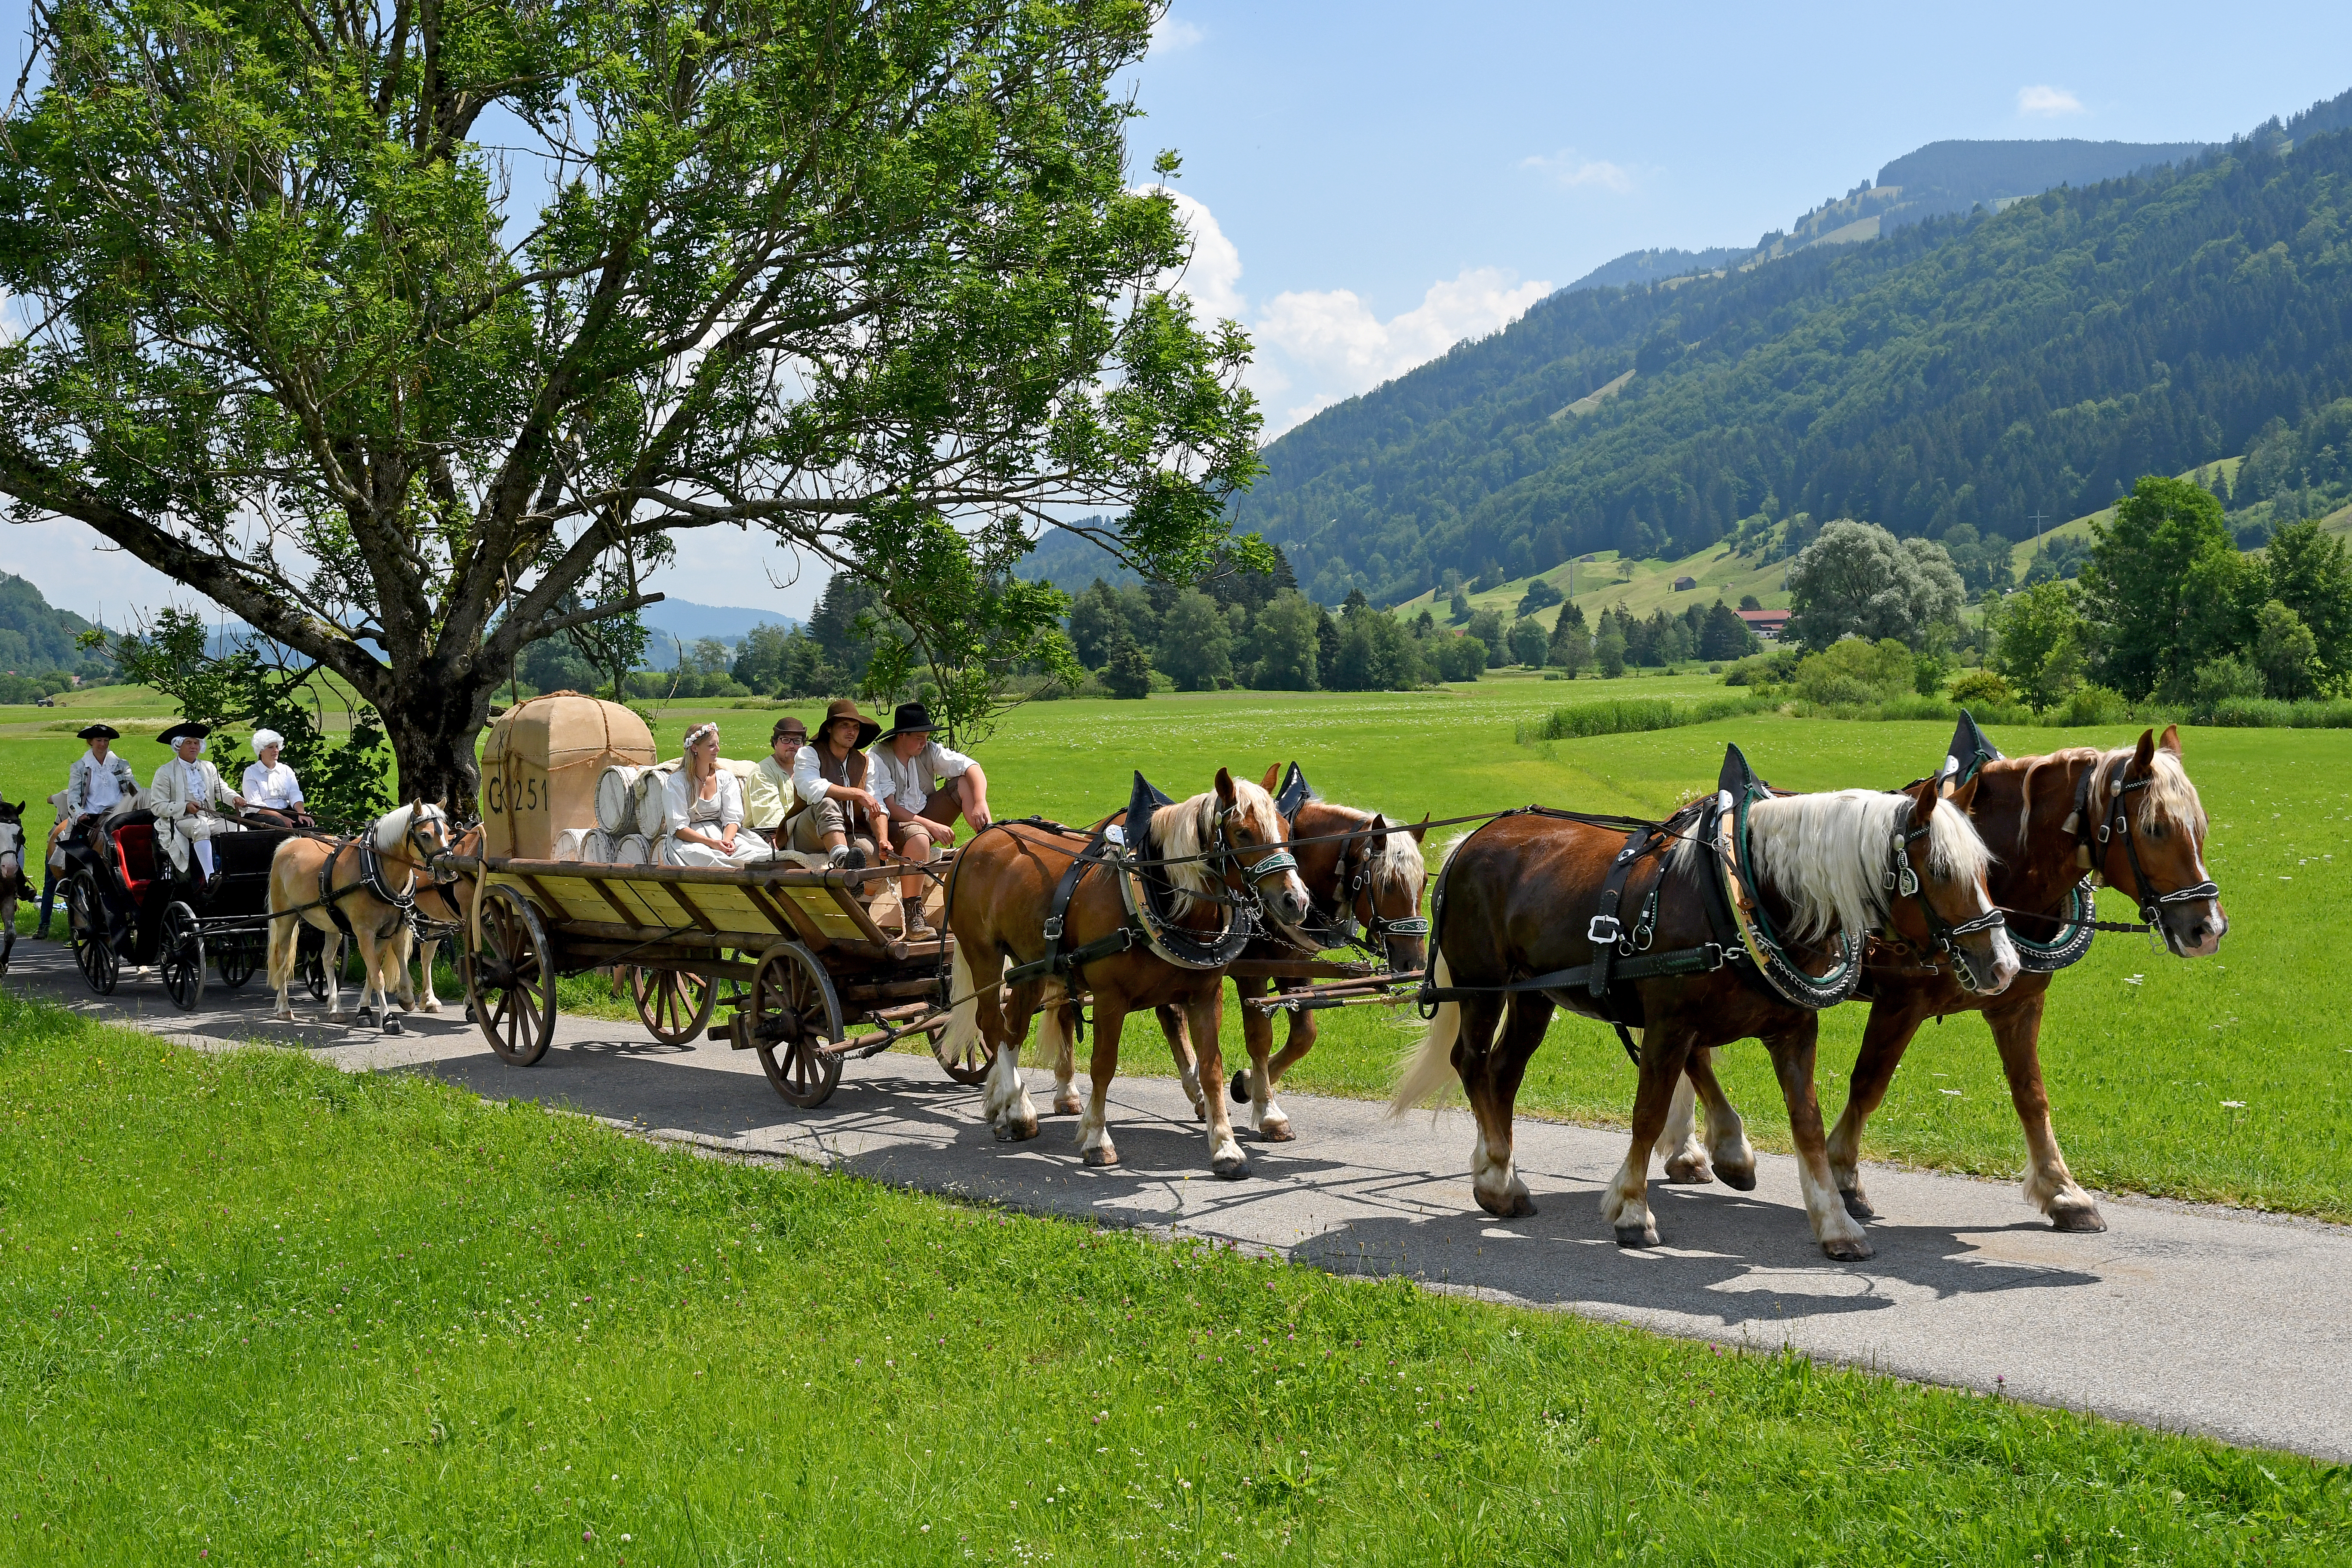  Pferdekutschen auf einer Straße zwischen grünen Wiesen - das Bild wird mit Klick vergrößert 